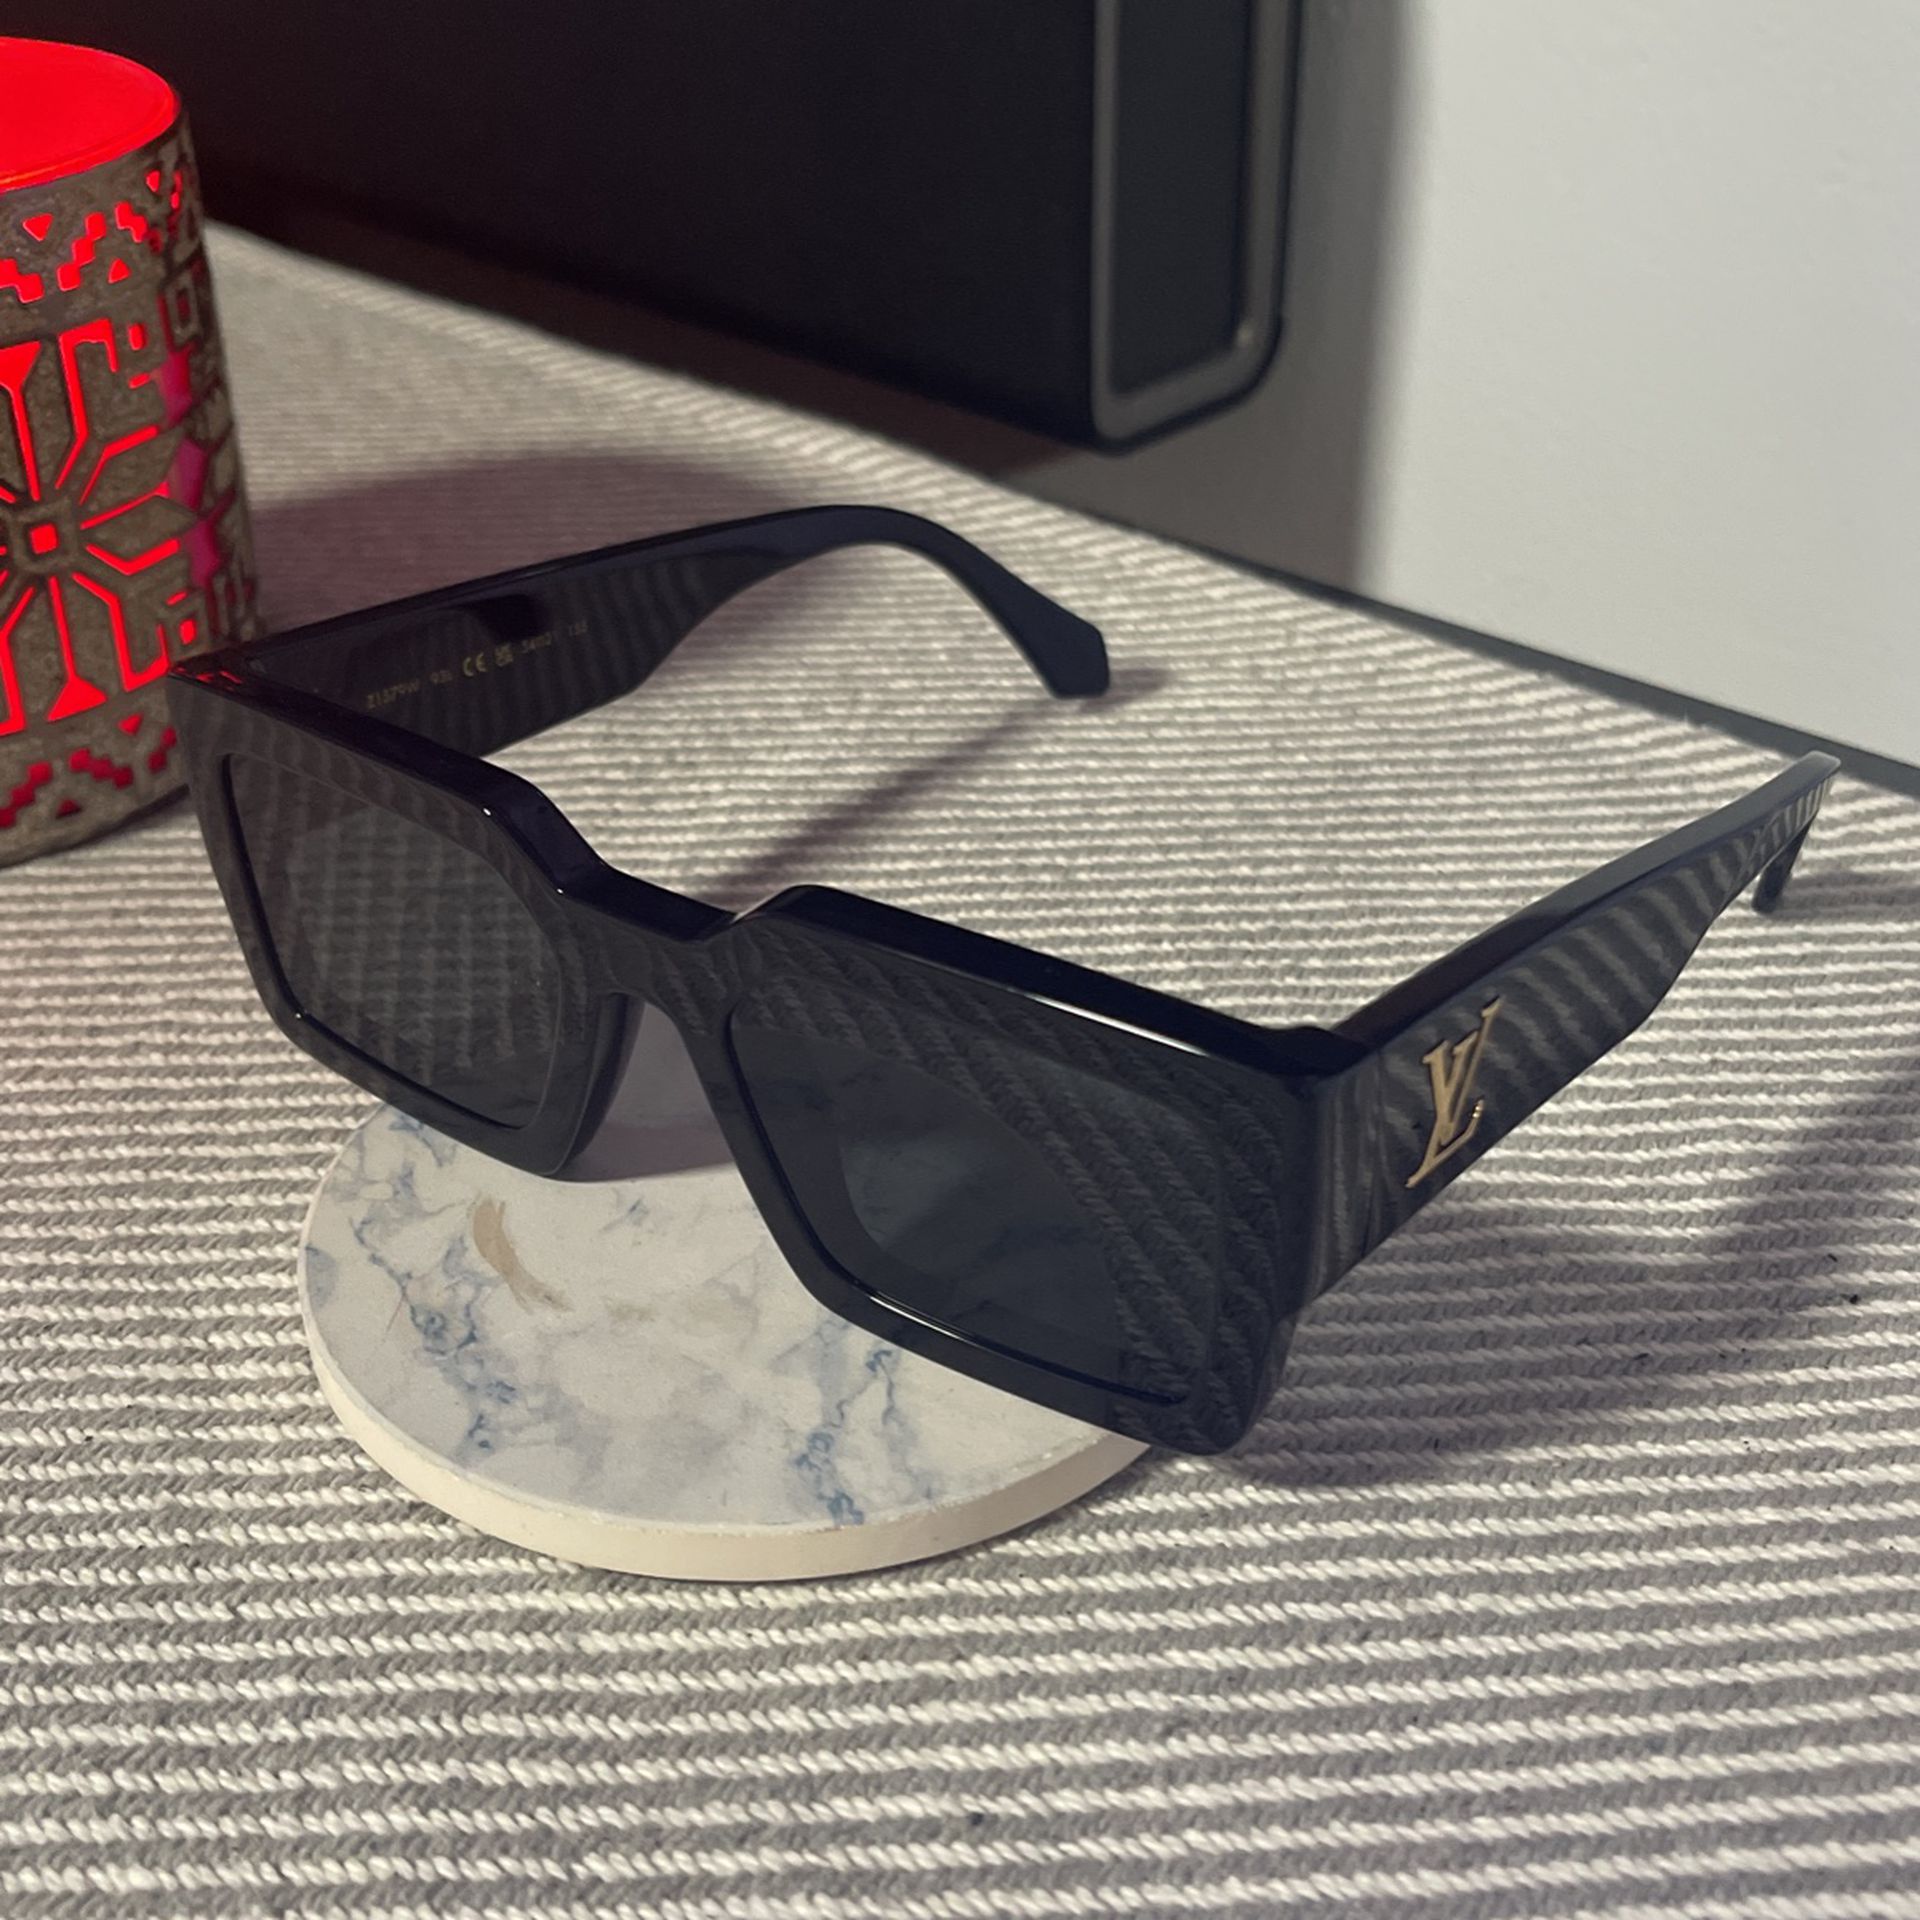 REVIEW] Louis Vuitton LV Clash Square Sunglasses ⬛️ : r